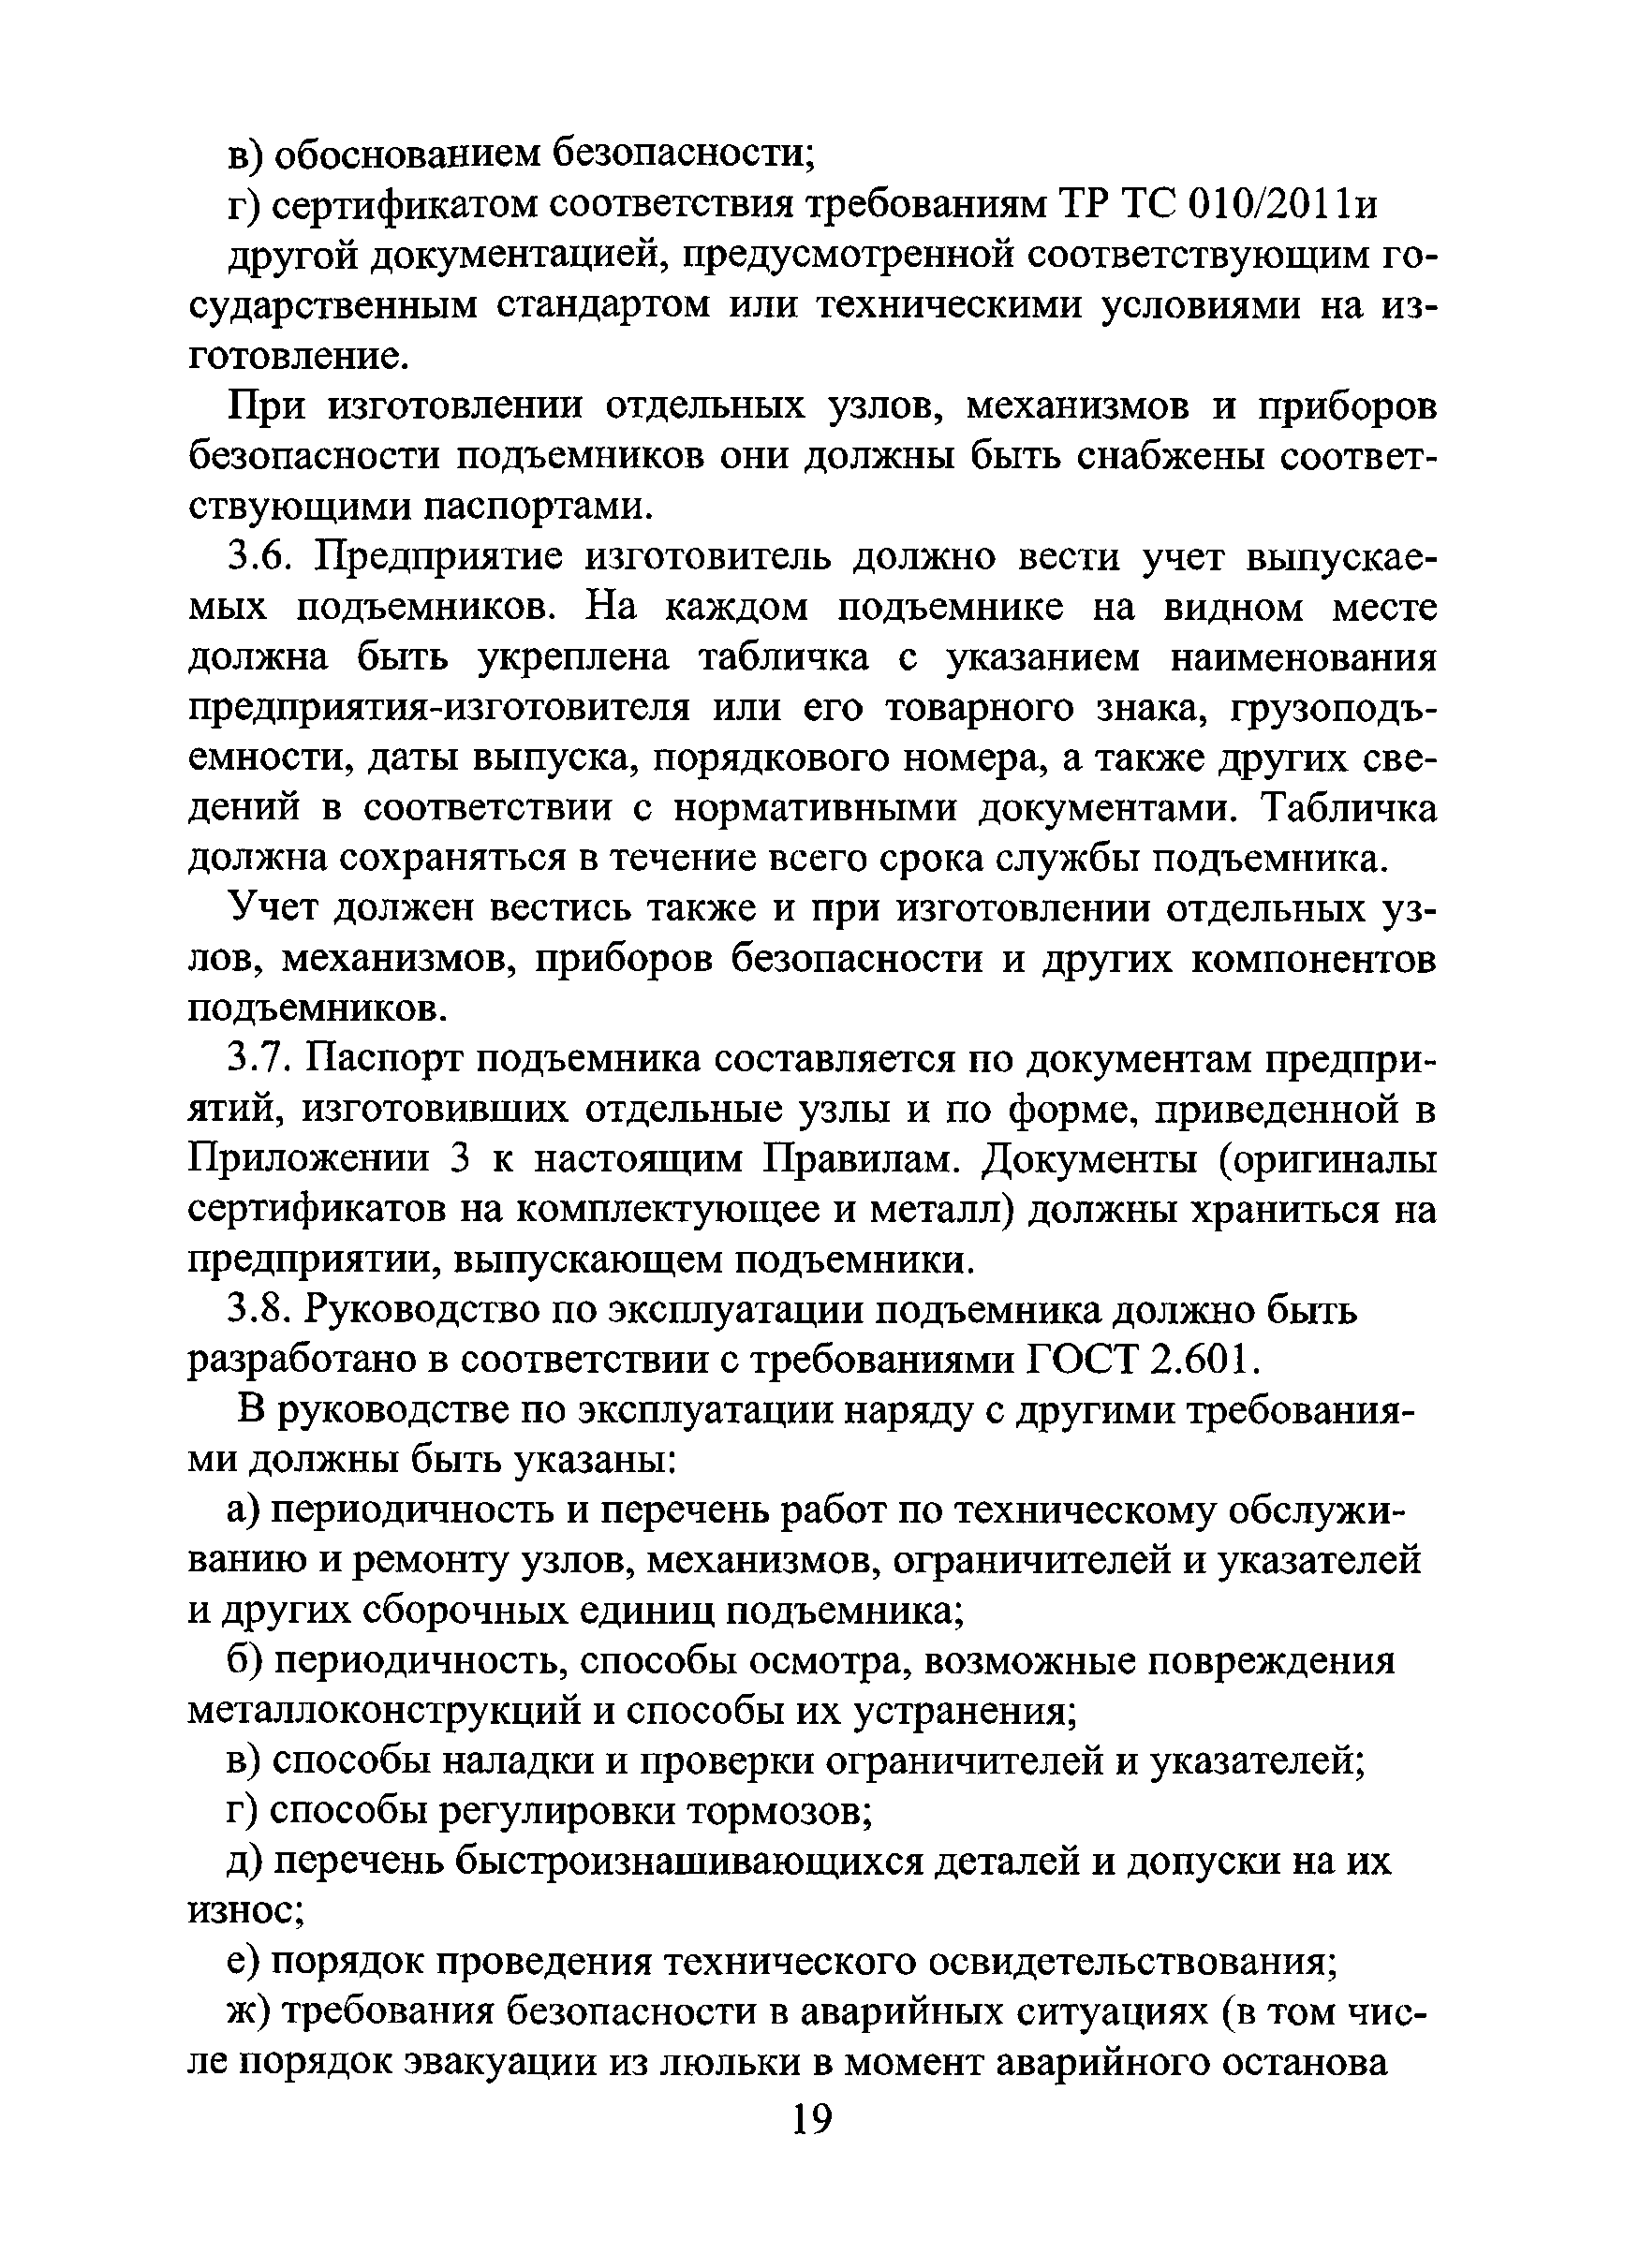 РД РосЭК 10-ПВ-02